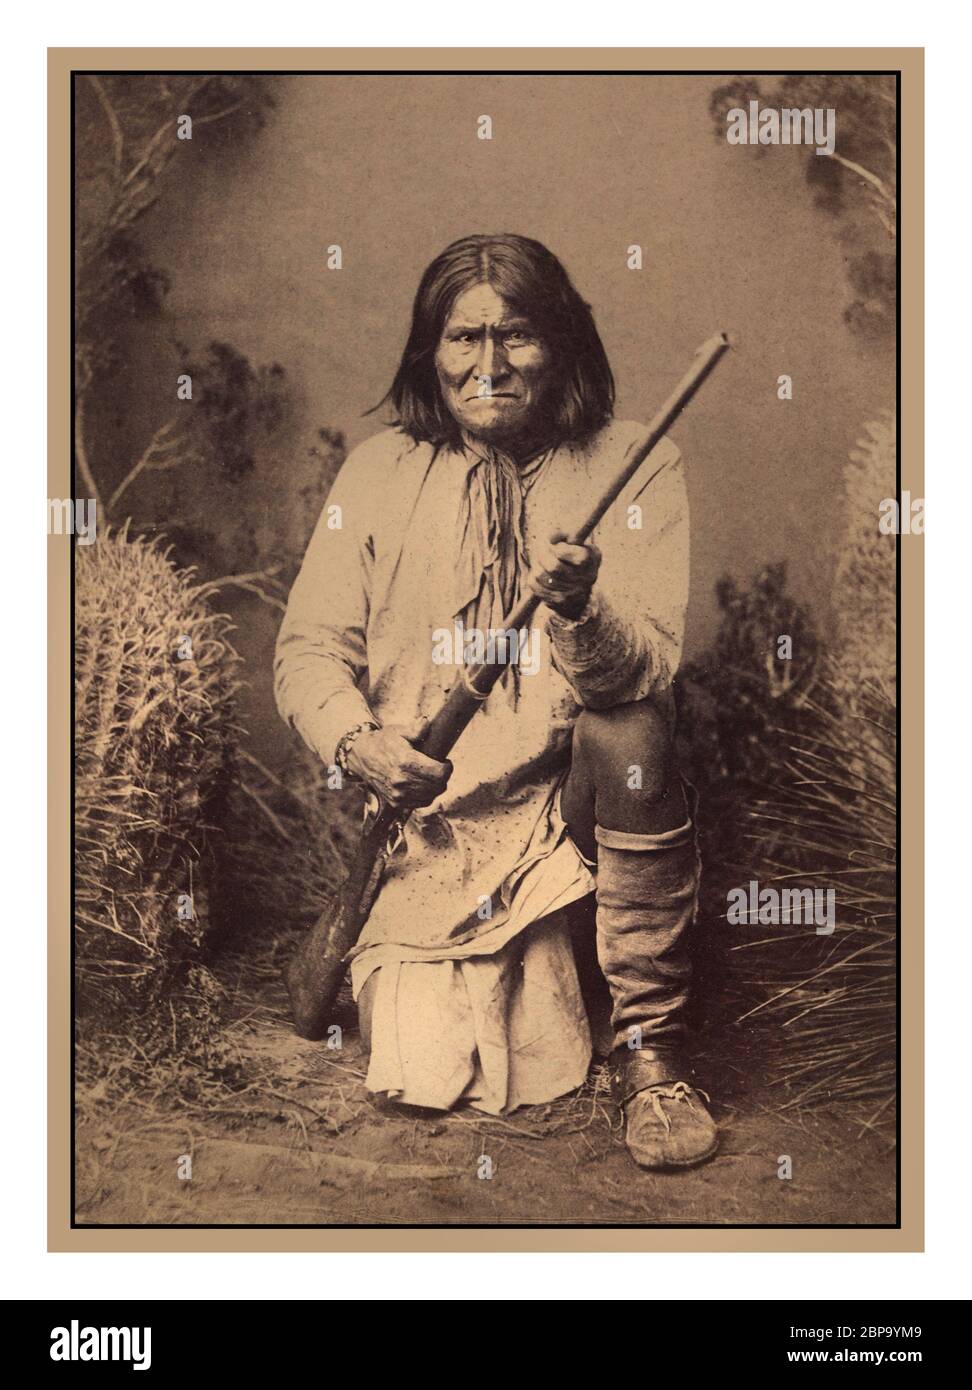 GERONIMO Bedonkohe, leader di guerra Apache, Geronimo si è guadagnato una reputazione come un avversario feroce sia per le autorità messicane che per quelle statunitensi. Dopo che sua madre, moglie e tre bambini furono uccisi dai soldati messicani nel 1851, intensificò la sua opposizione a coloro che cercavano di soggiogare la sua tribù. Geronimo non voleva essere rimosso a una riserva, e combatté sempre più per proteggere il suo tradizionale stile di vita nel sud-ovest. Durante questo periodo le sue incursioni ardenti e le sue improbabili fughe lo hanno reso una figura più grande della vita nell'immaginazione americana. Foto Stock